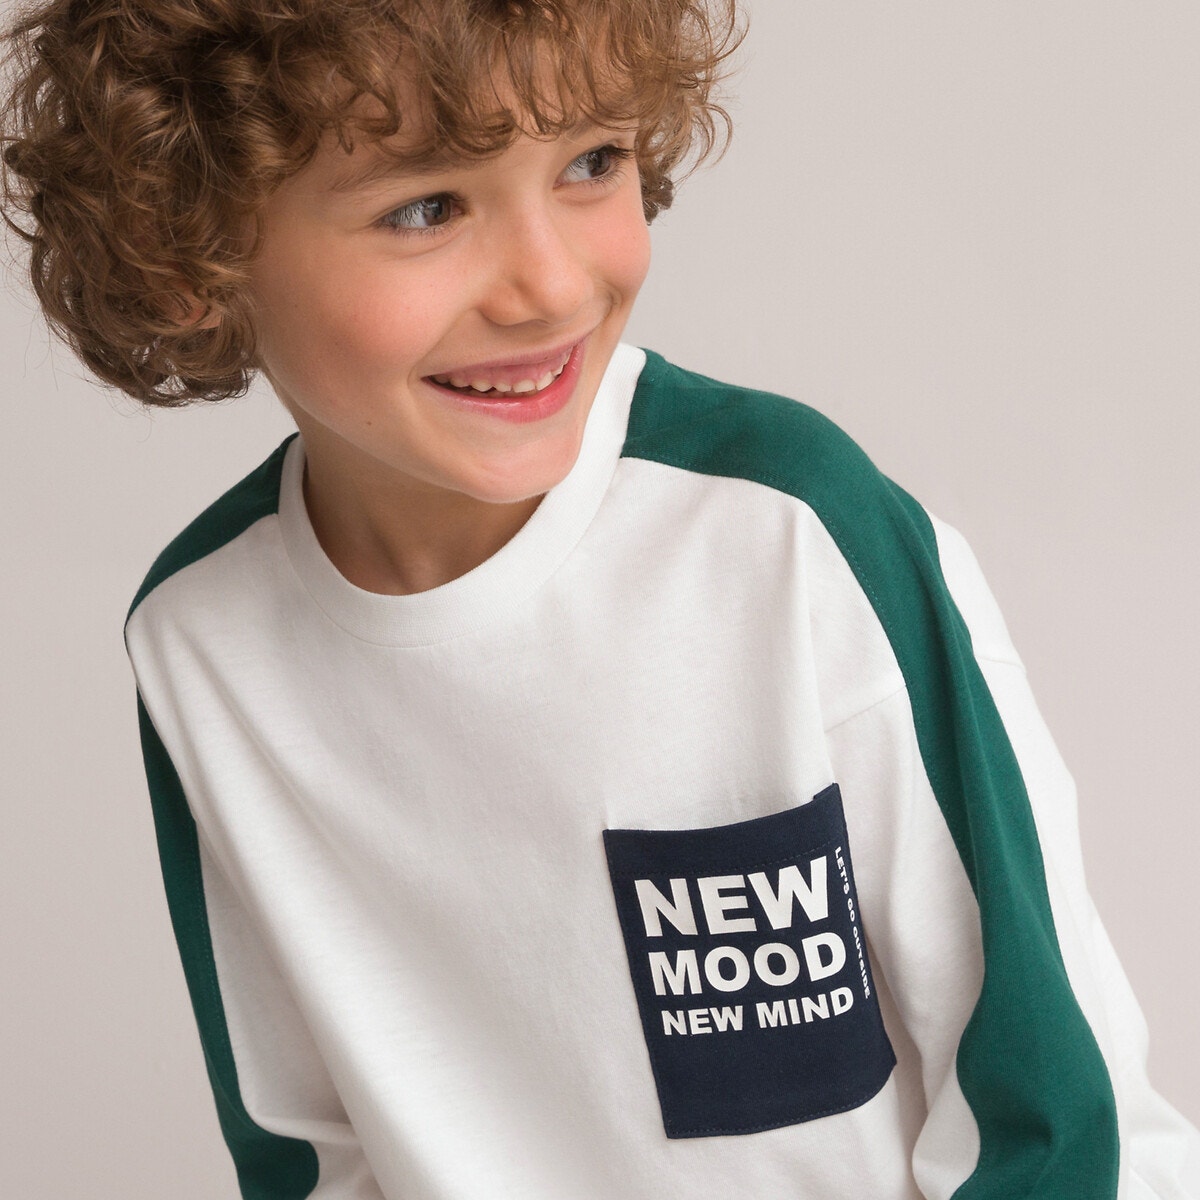 Μόδα > Παιδικά > Αγόρι > T-shirt, πόλο > Μακριά μανίκια Μακρυμάνικη μπλούζα με μήνυμα